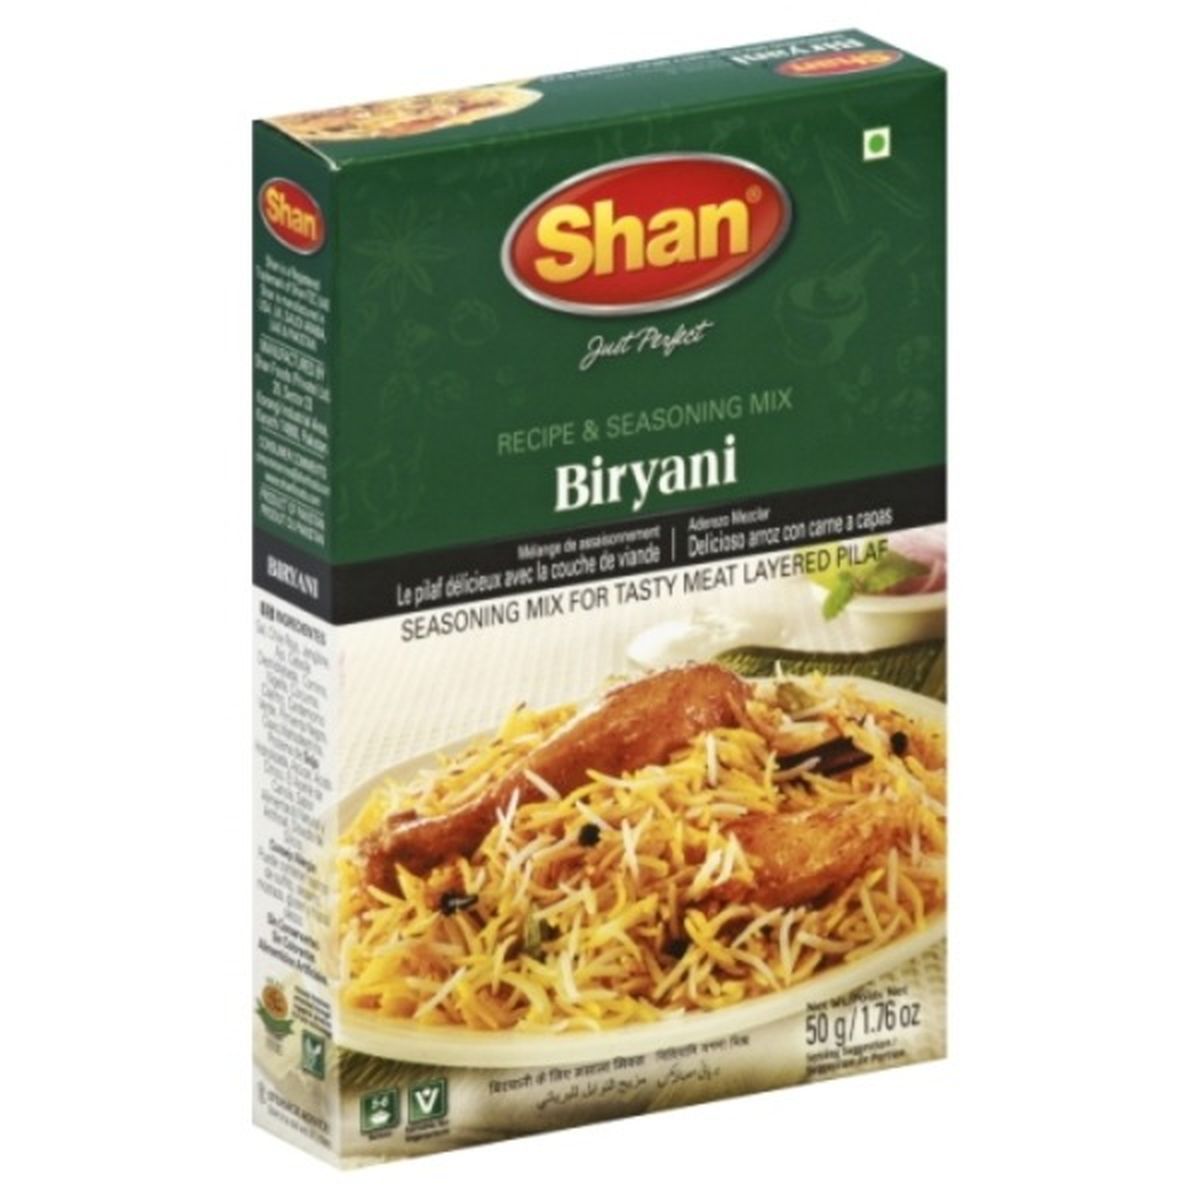 Calories in Shan Recipe & Seasoning Mix, Biryani